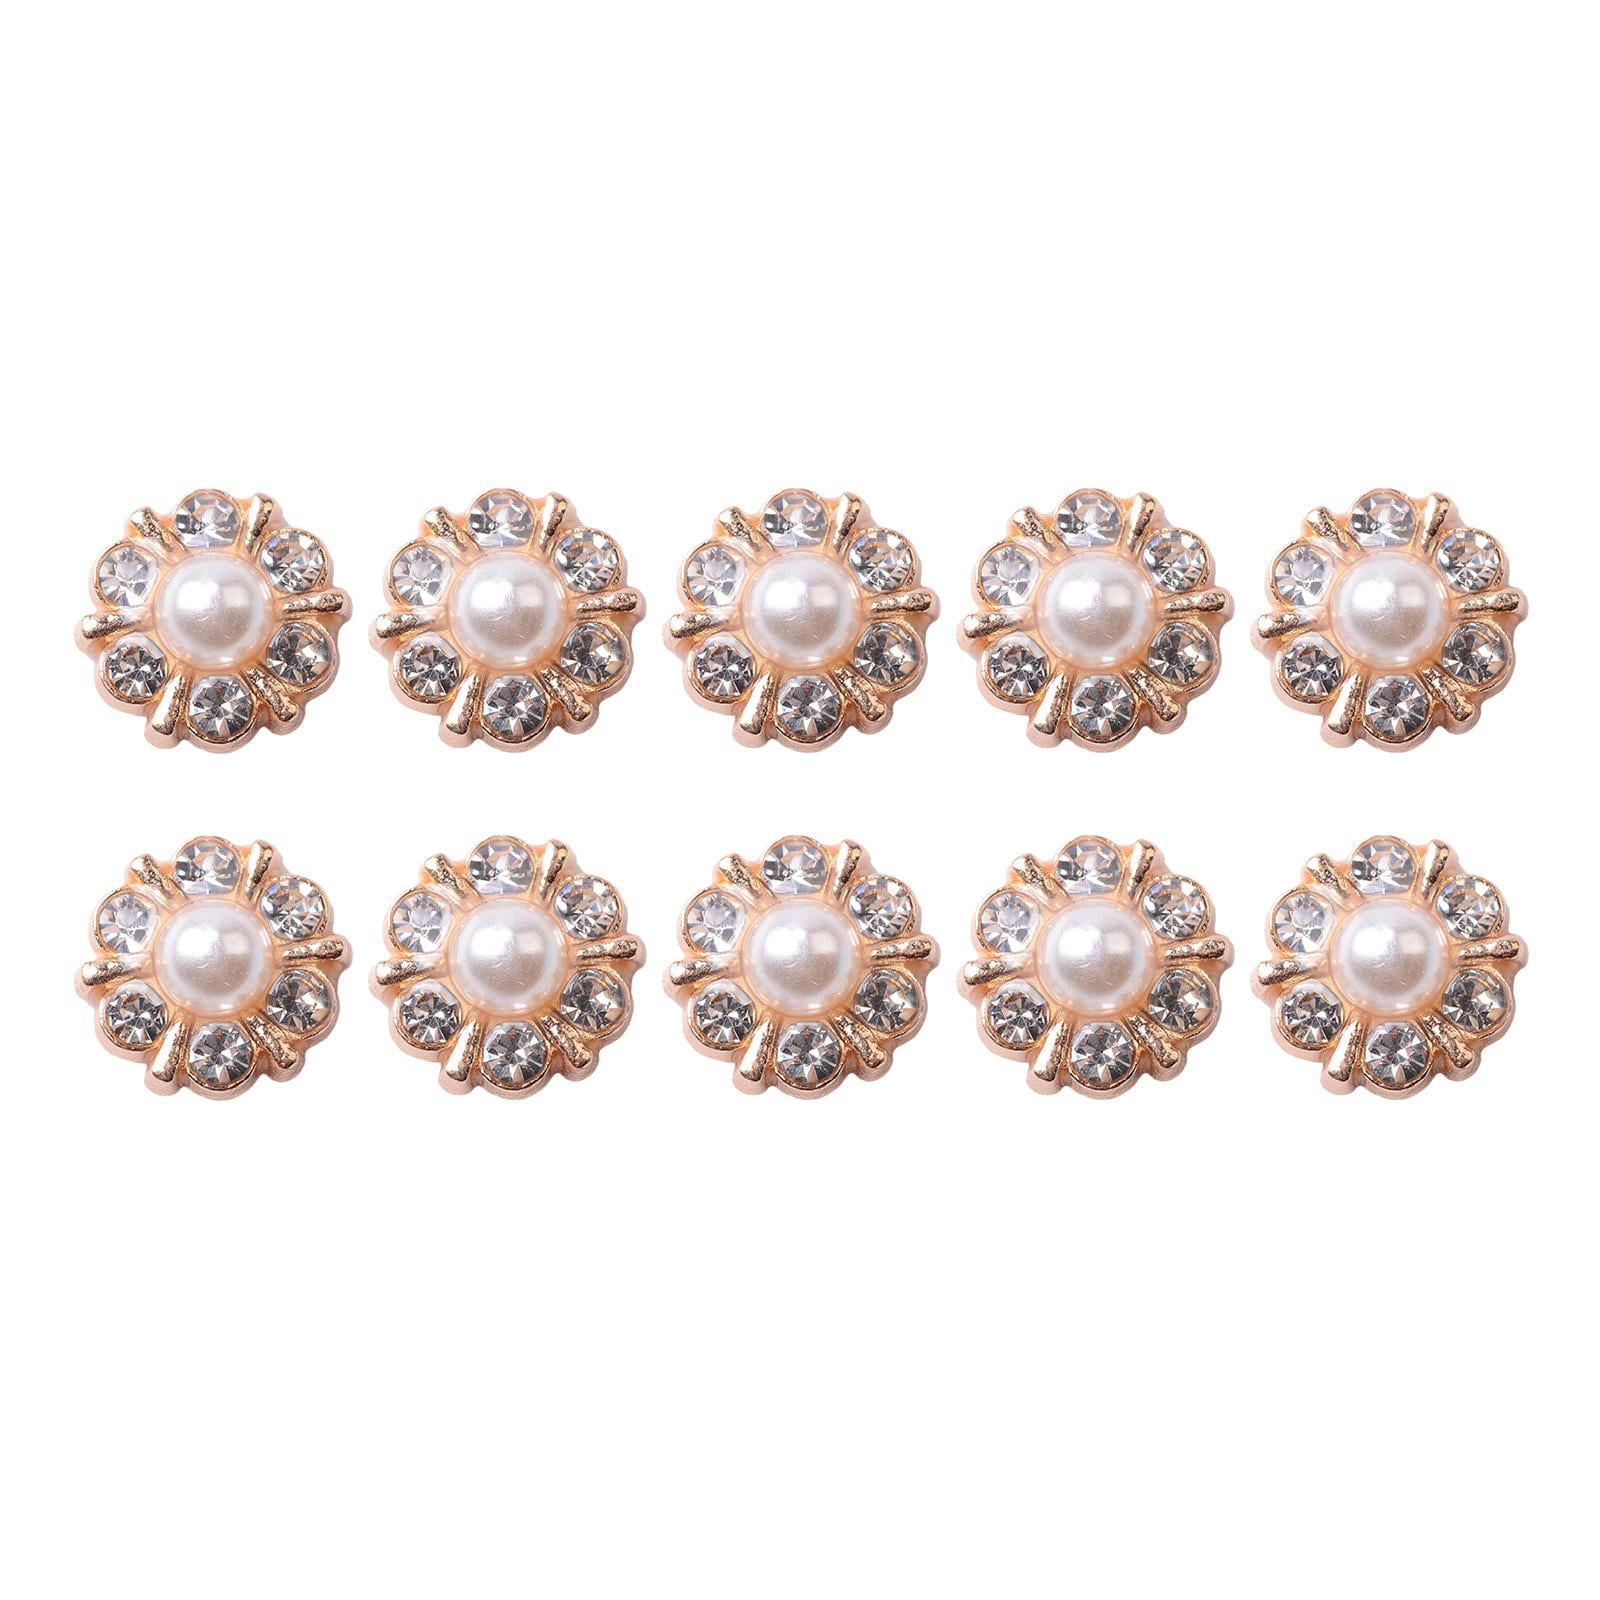 100pcs Multicolor Crystal Flower Shape Rhinestone Buttons Sew On Rhinestone  Flatback Rhinestone Gold Base With Setting Claw Diy Garments Dress Headdre